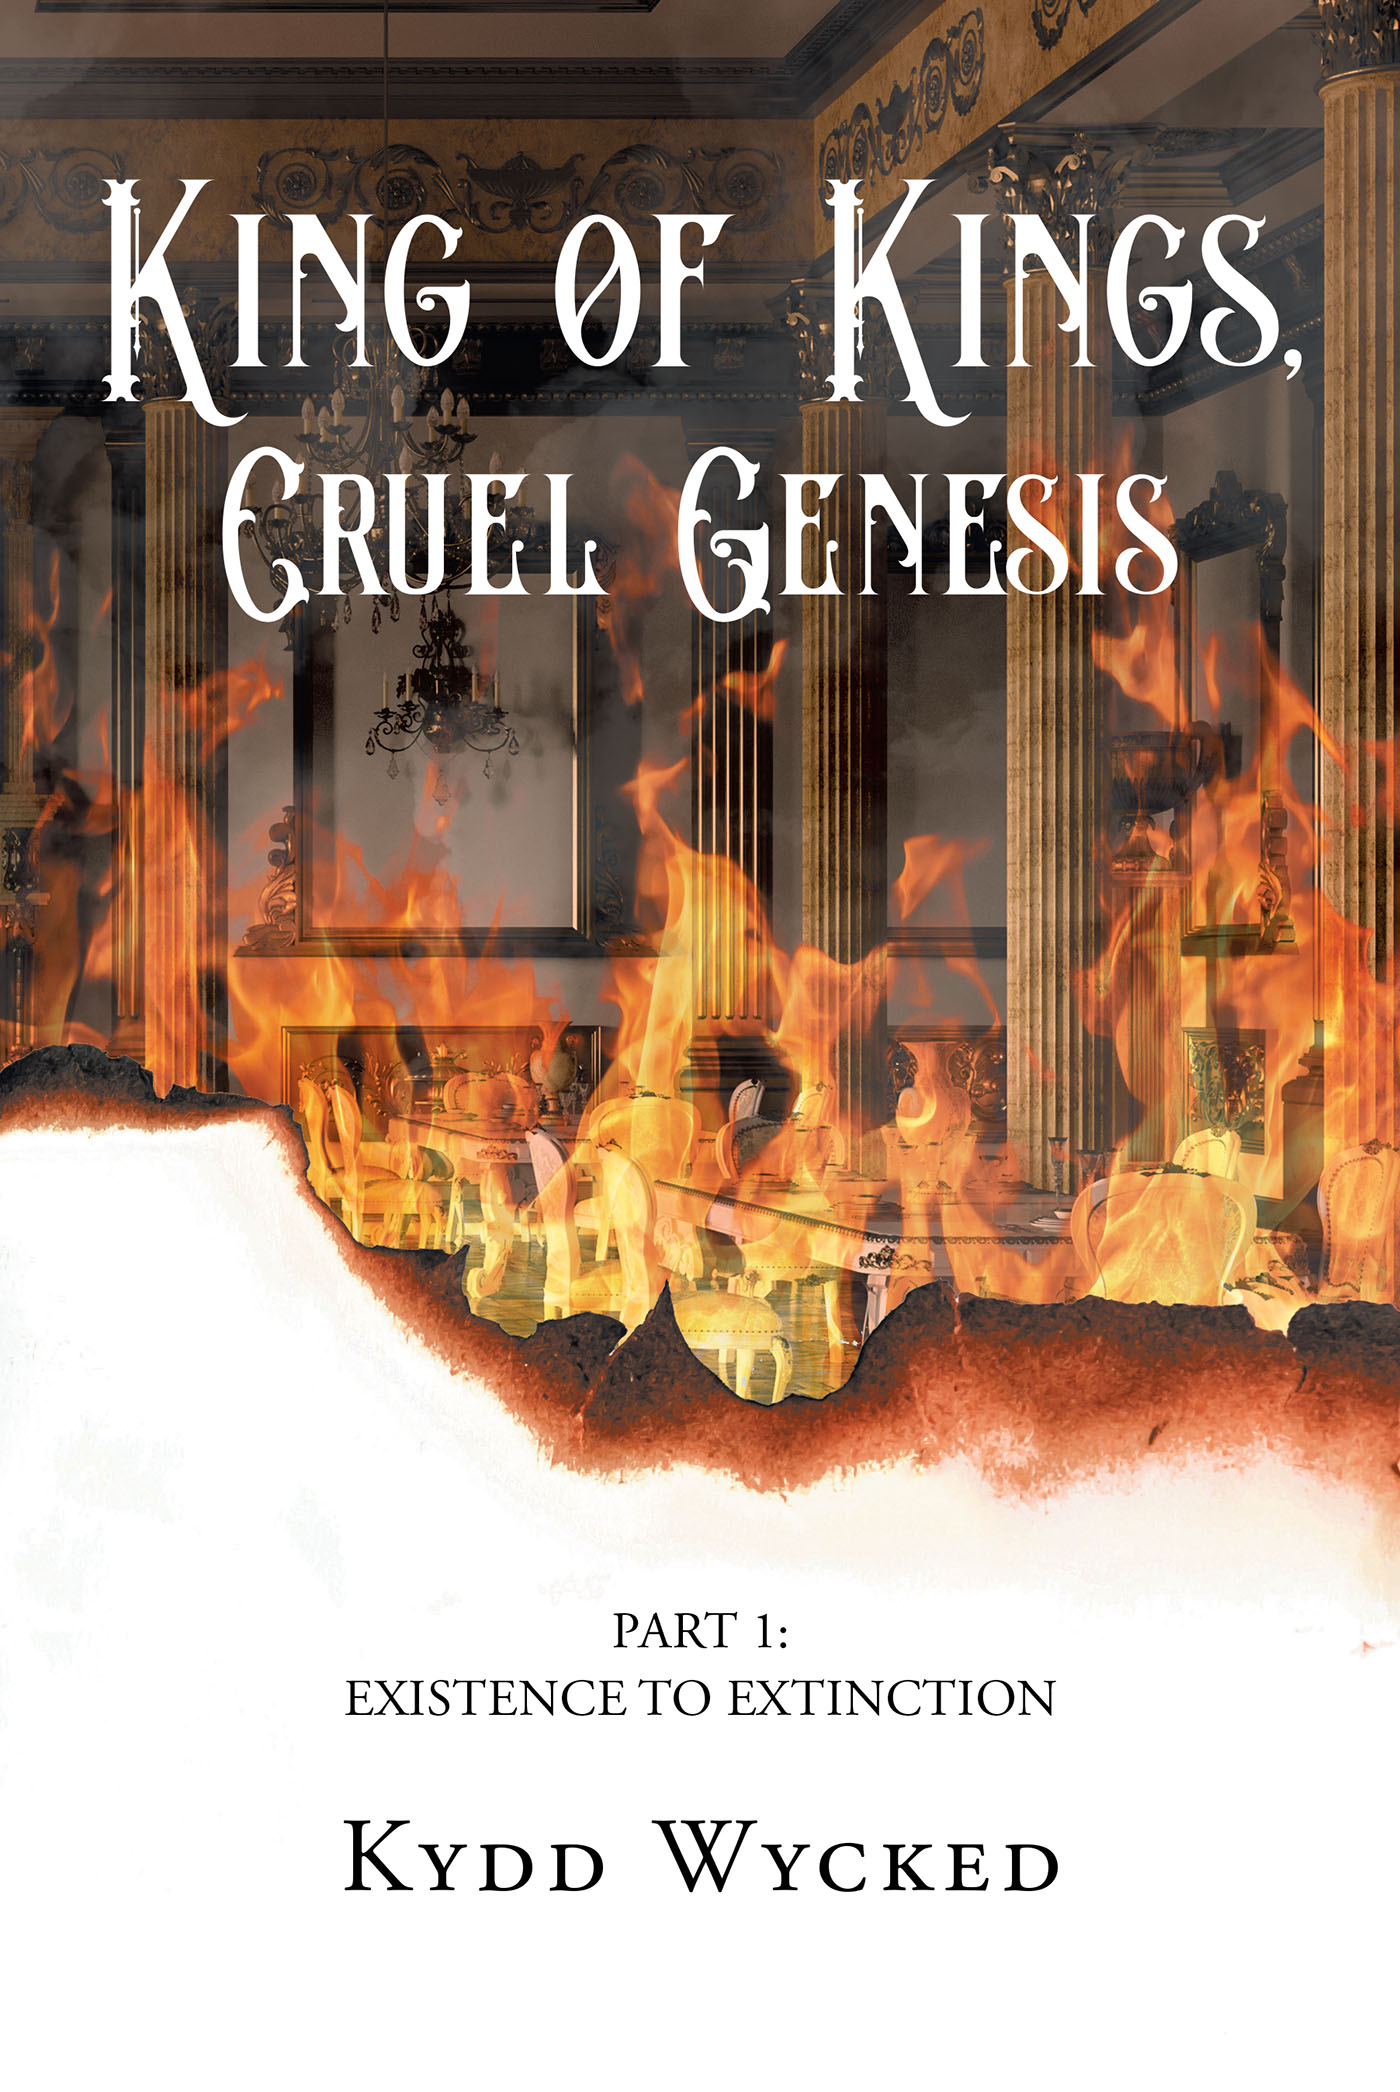 King of Kings, Cruel Genesis Cover Image